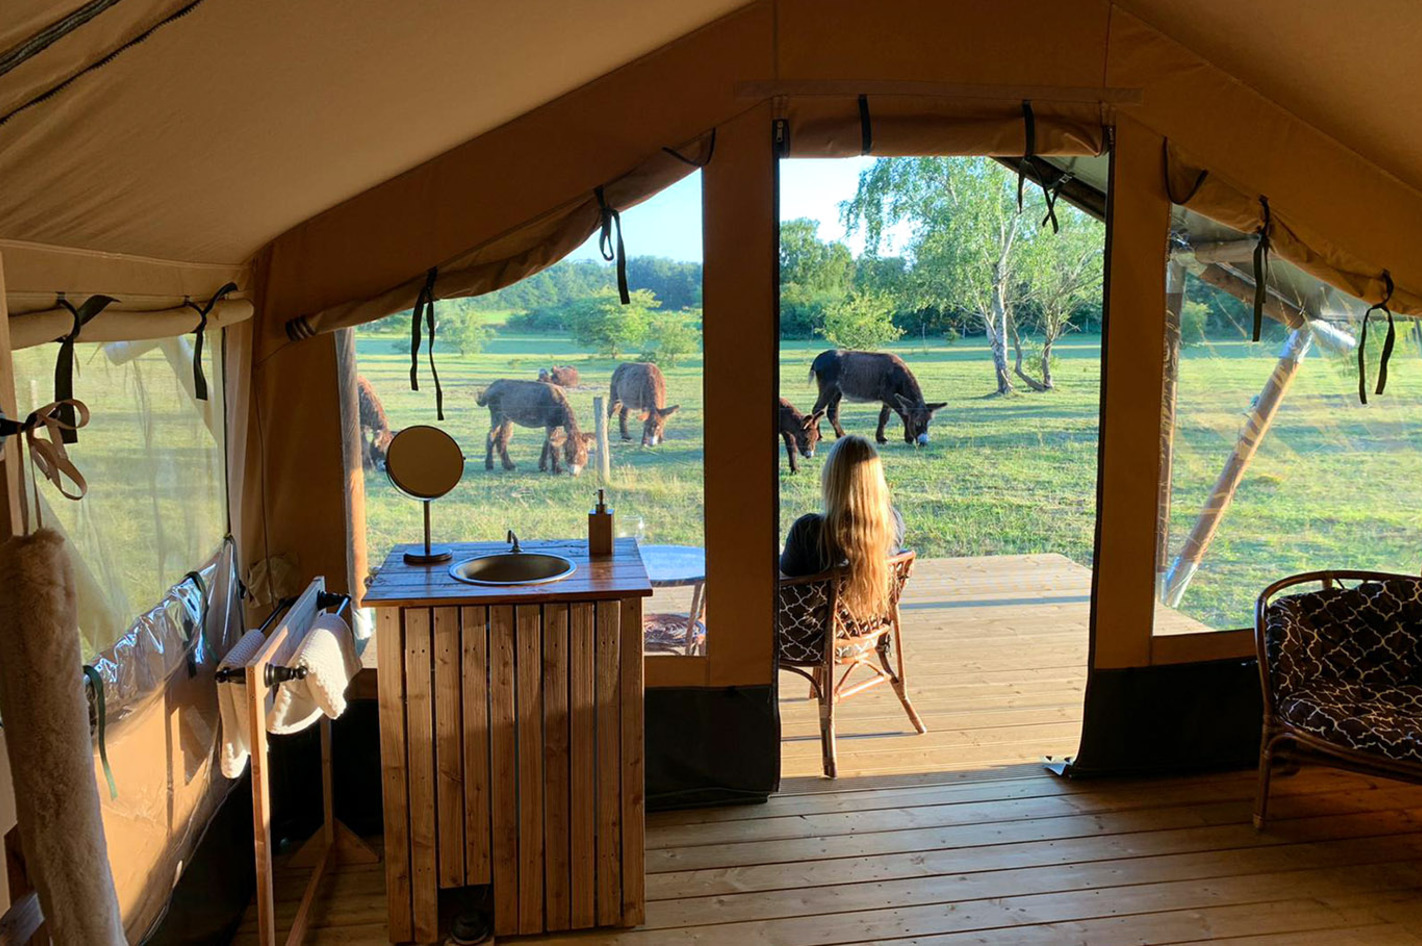 Camping im Tierpark Arche Warder für 2 (2 Nächte) – Hakuna Matata! Safari-Feeling im Tierpark Arche Warder